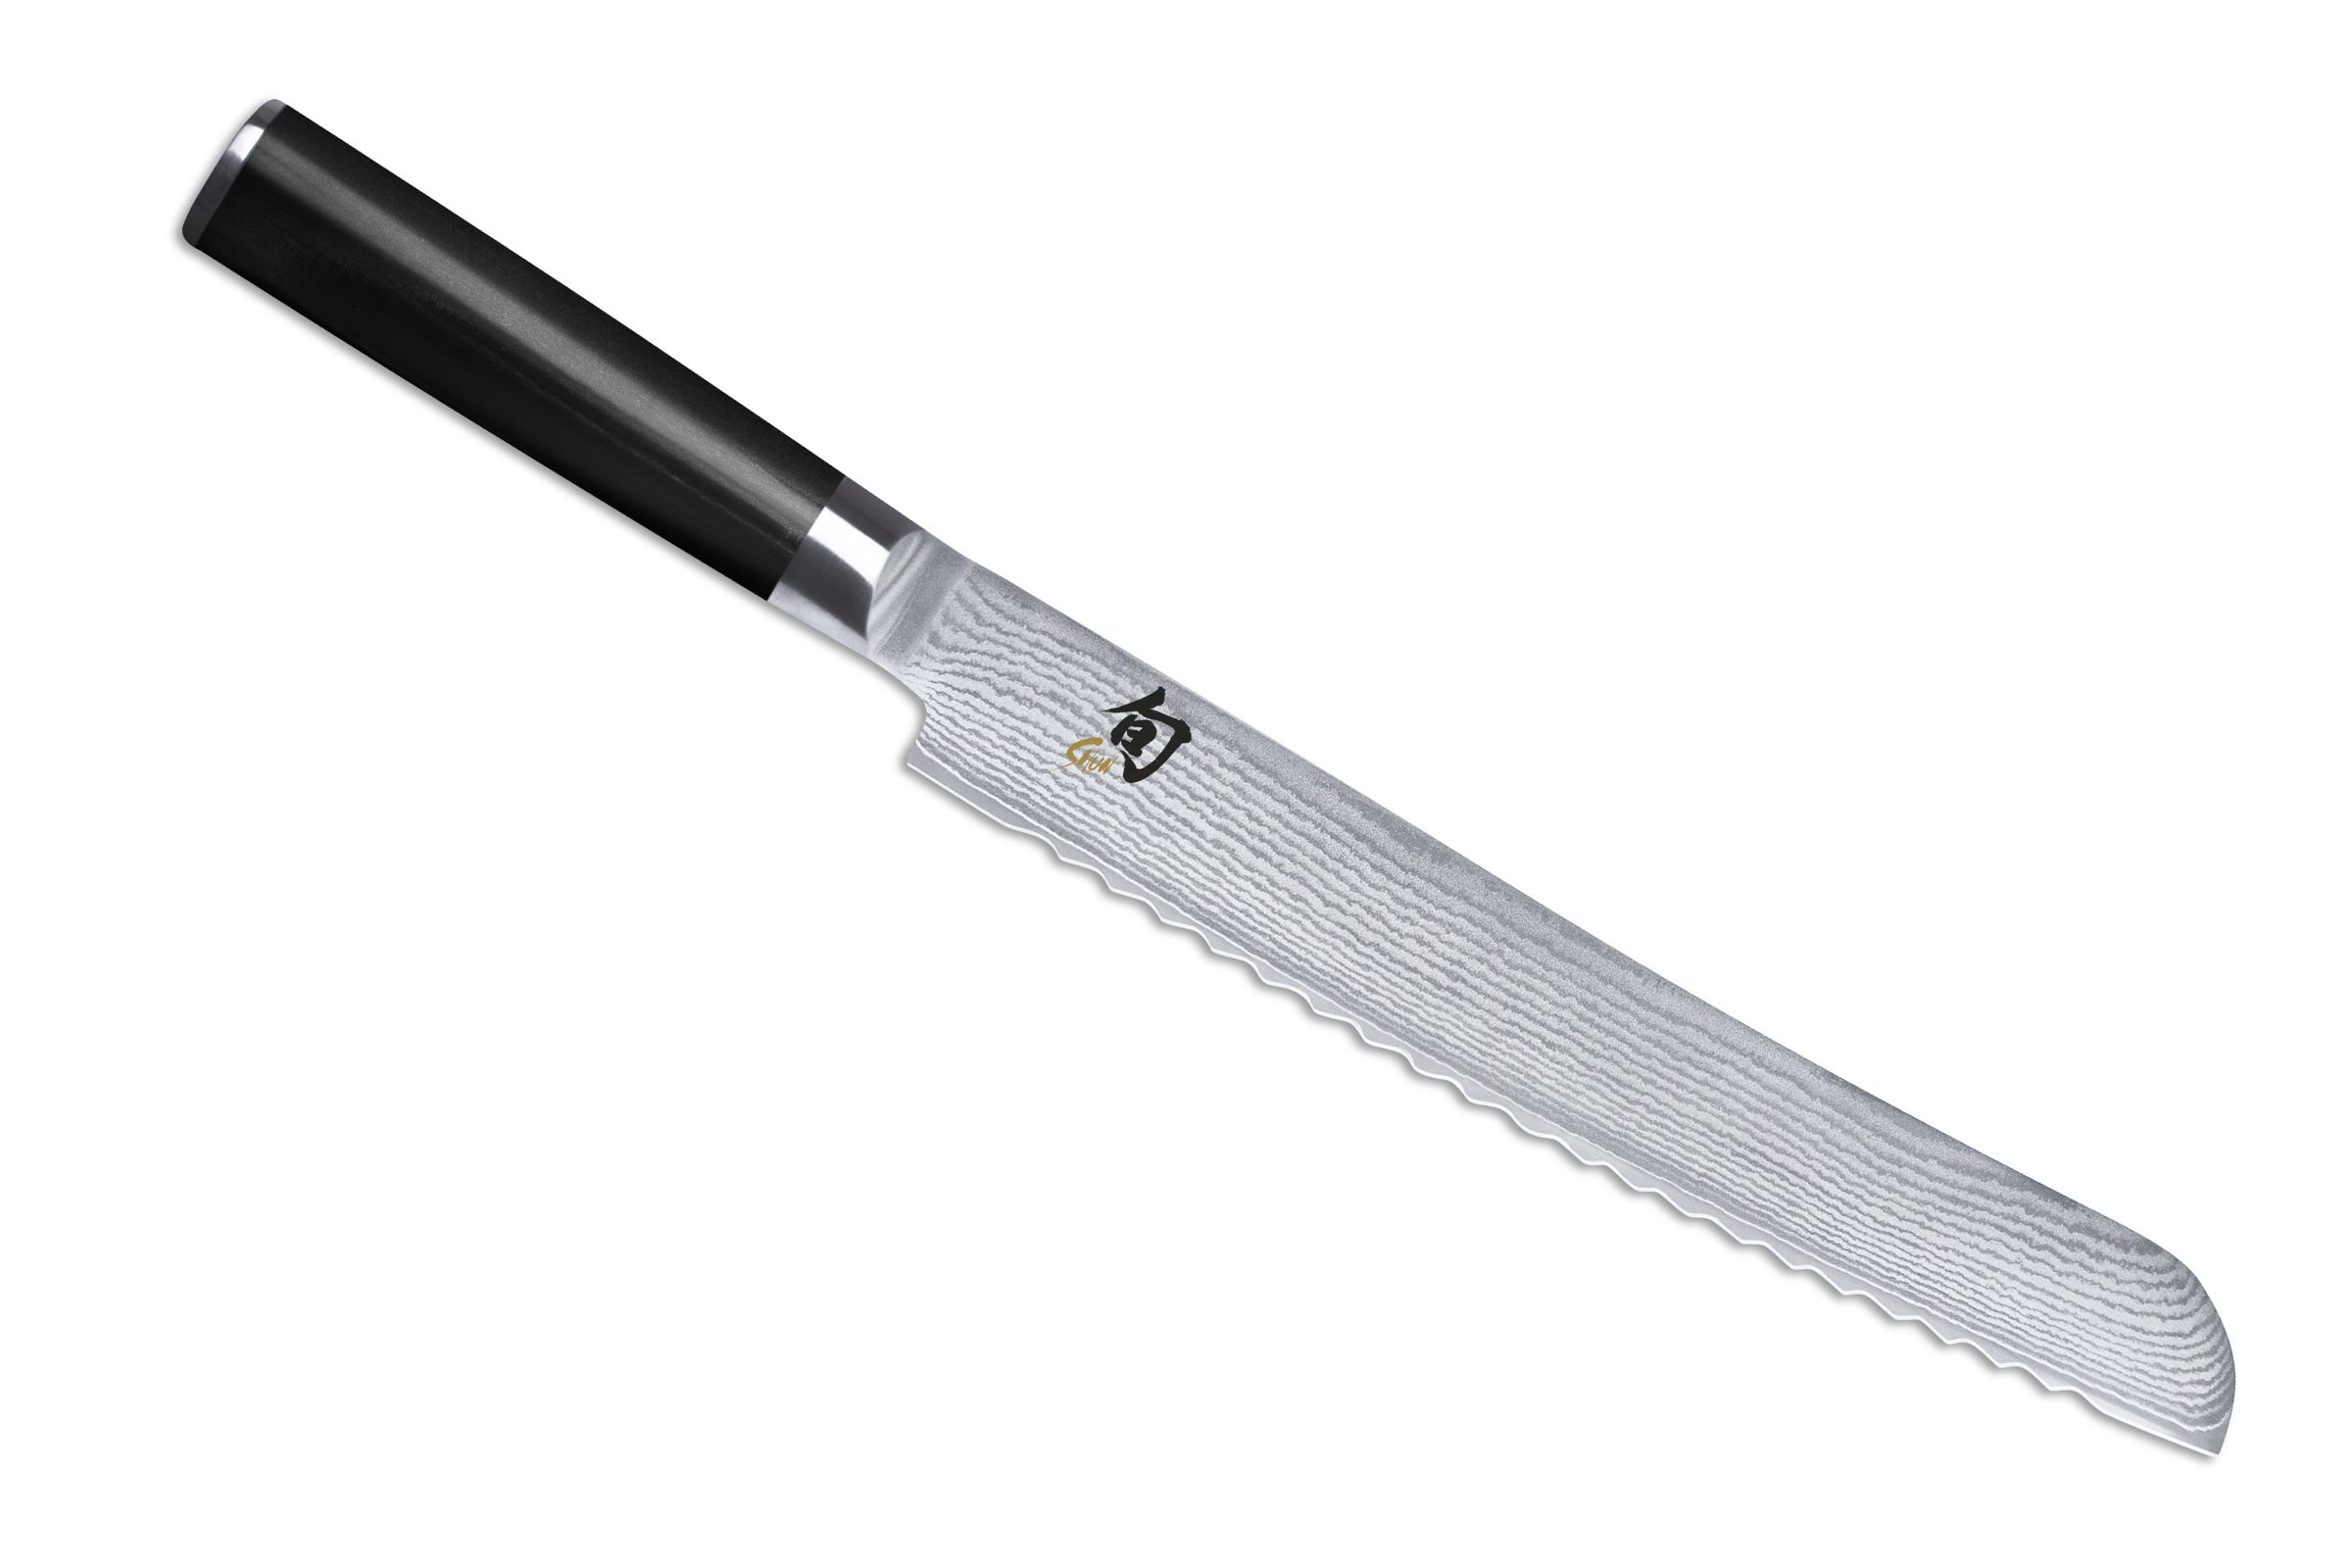 KAI Shun Classic Brotmesser - 23 cm Klinge mit Wellenschliff - Seitenansicht